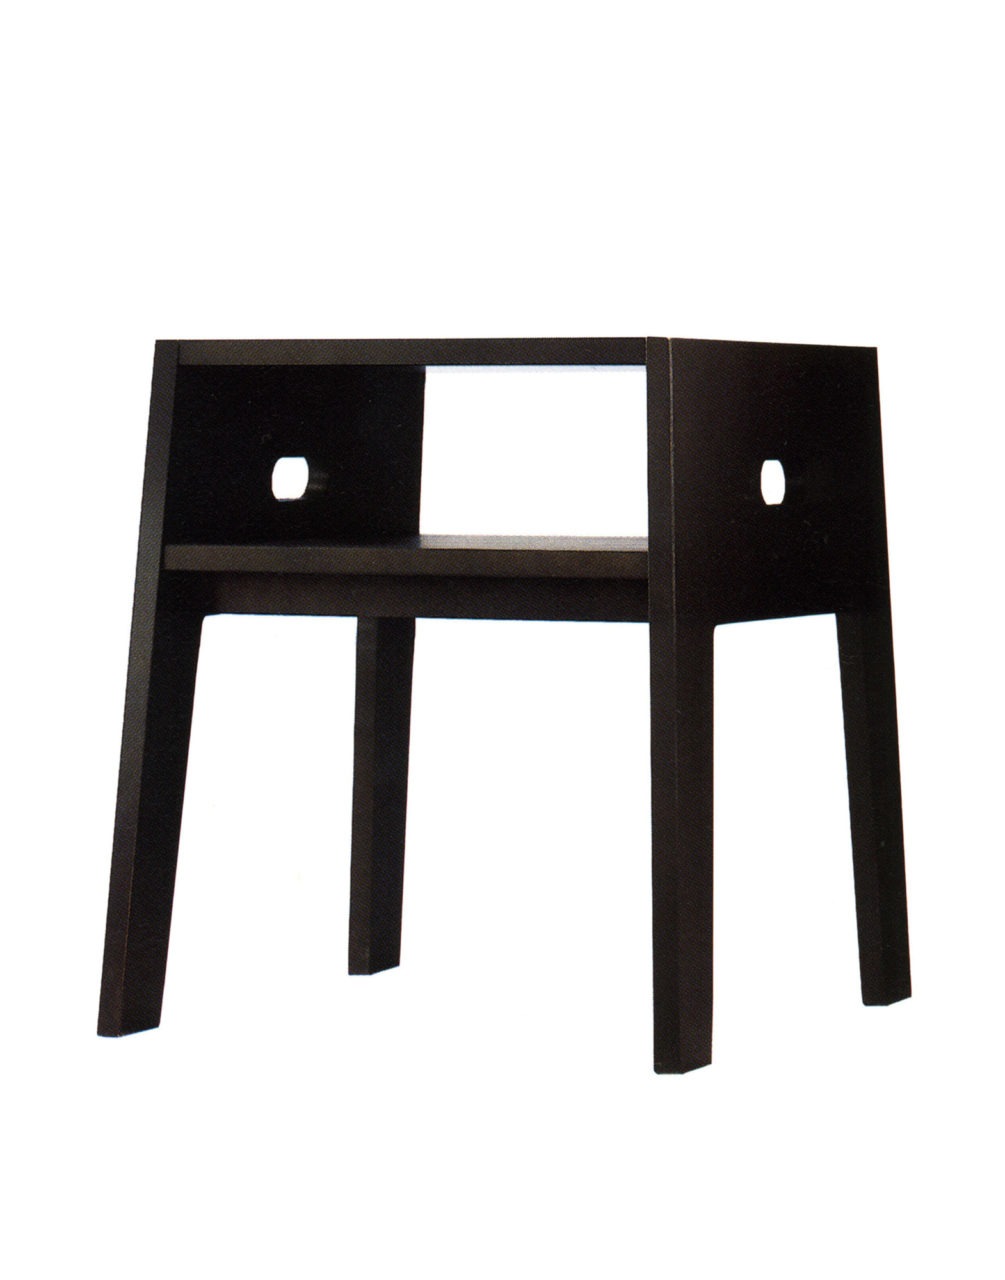 IKEA PS table/stool 1995.